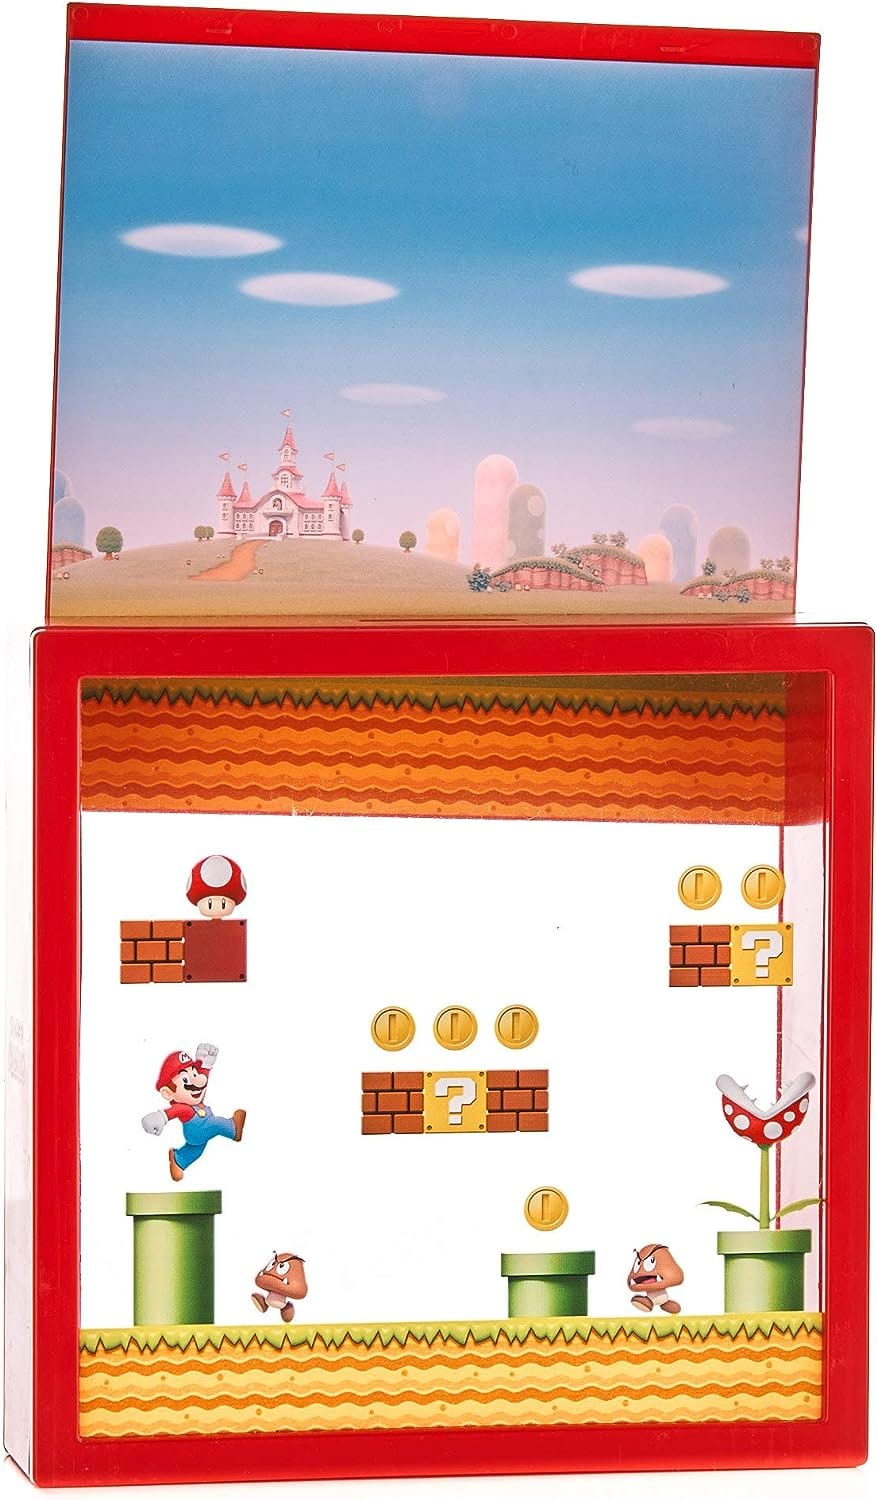 Super Mario Bros. Arcade Money Box